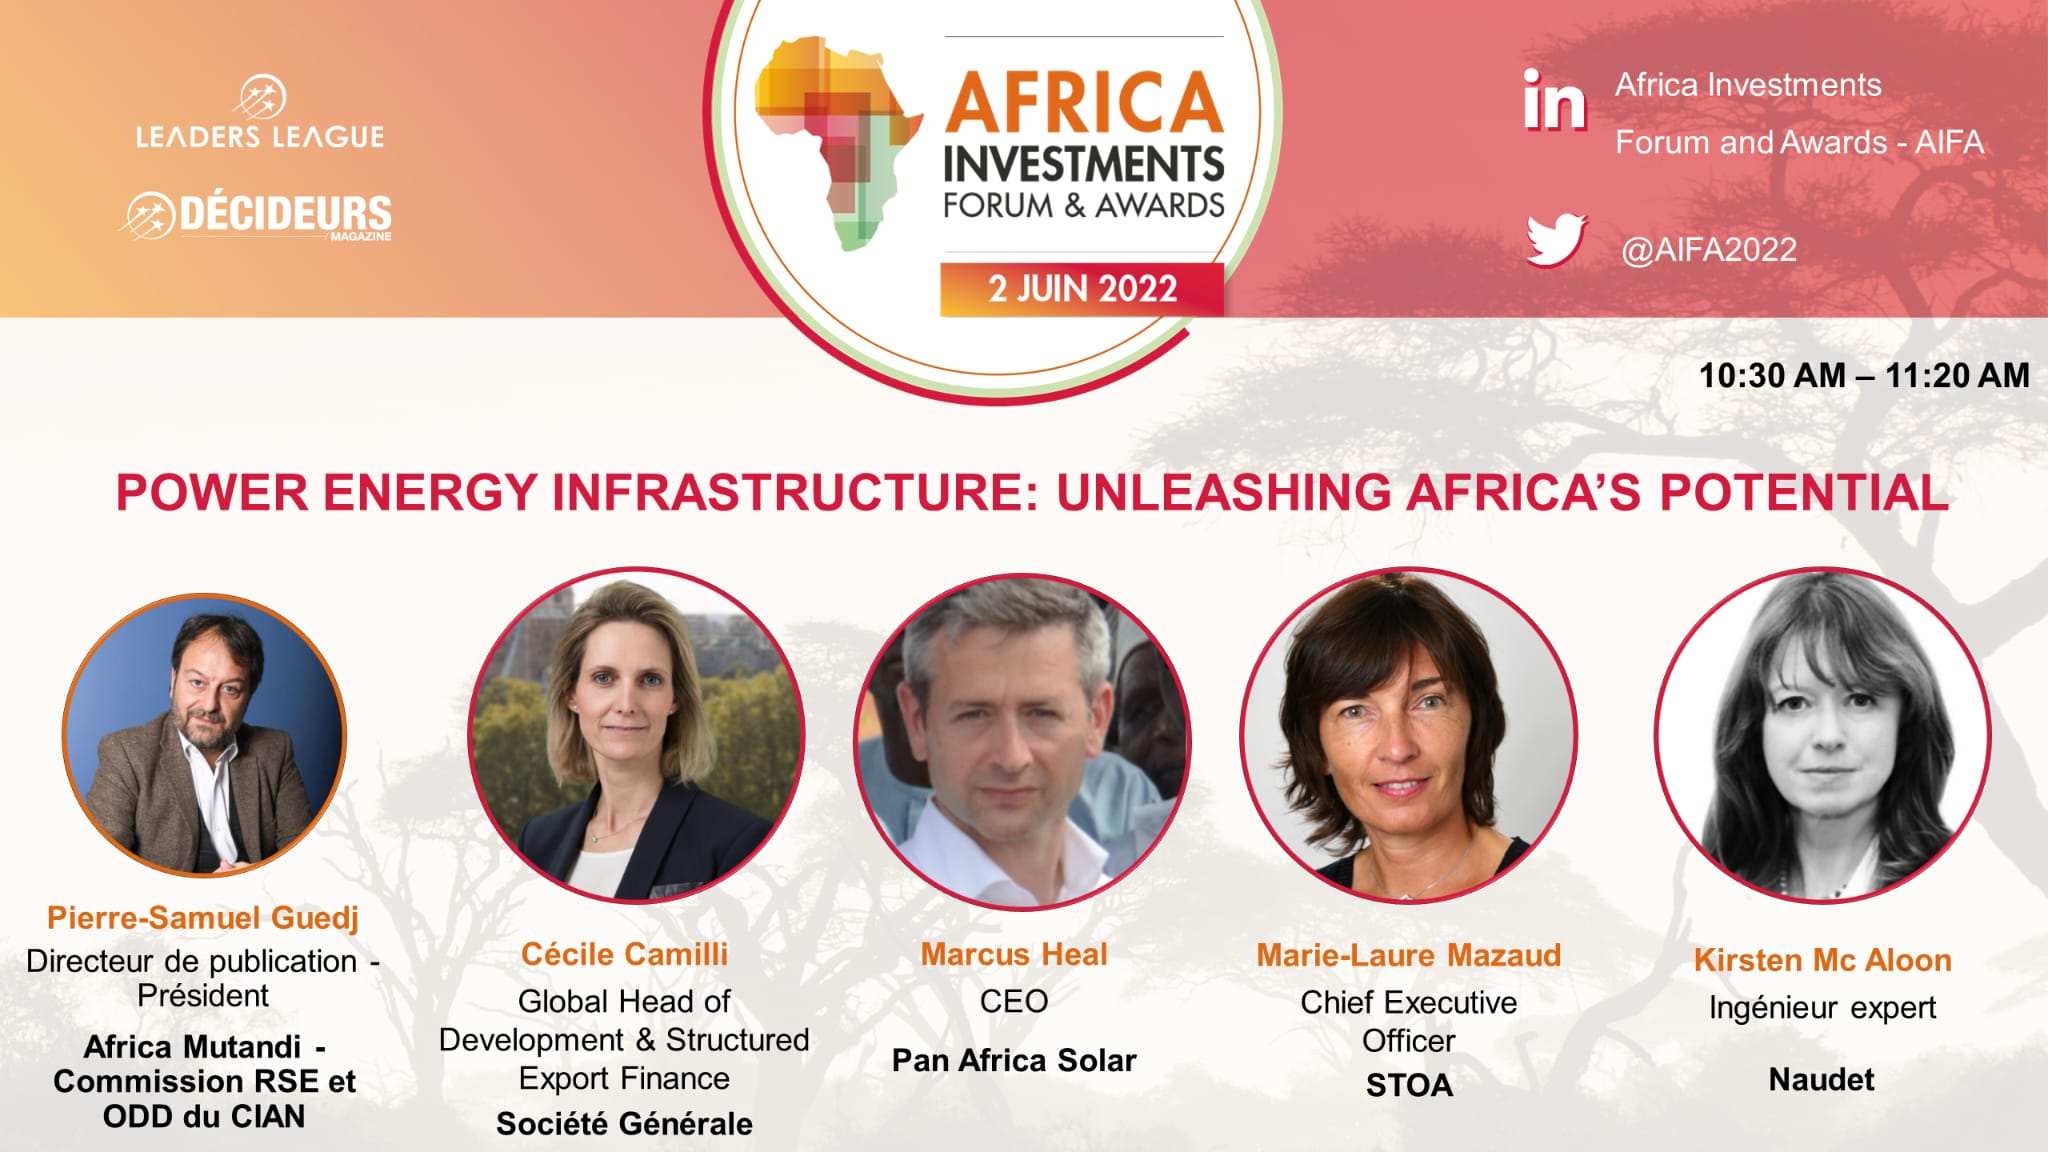 Affectio Mutandi animera le panel sur les infrastructures énergétiques en Afrique le 2 juin 2022 lors de l’AIFA